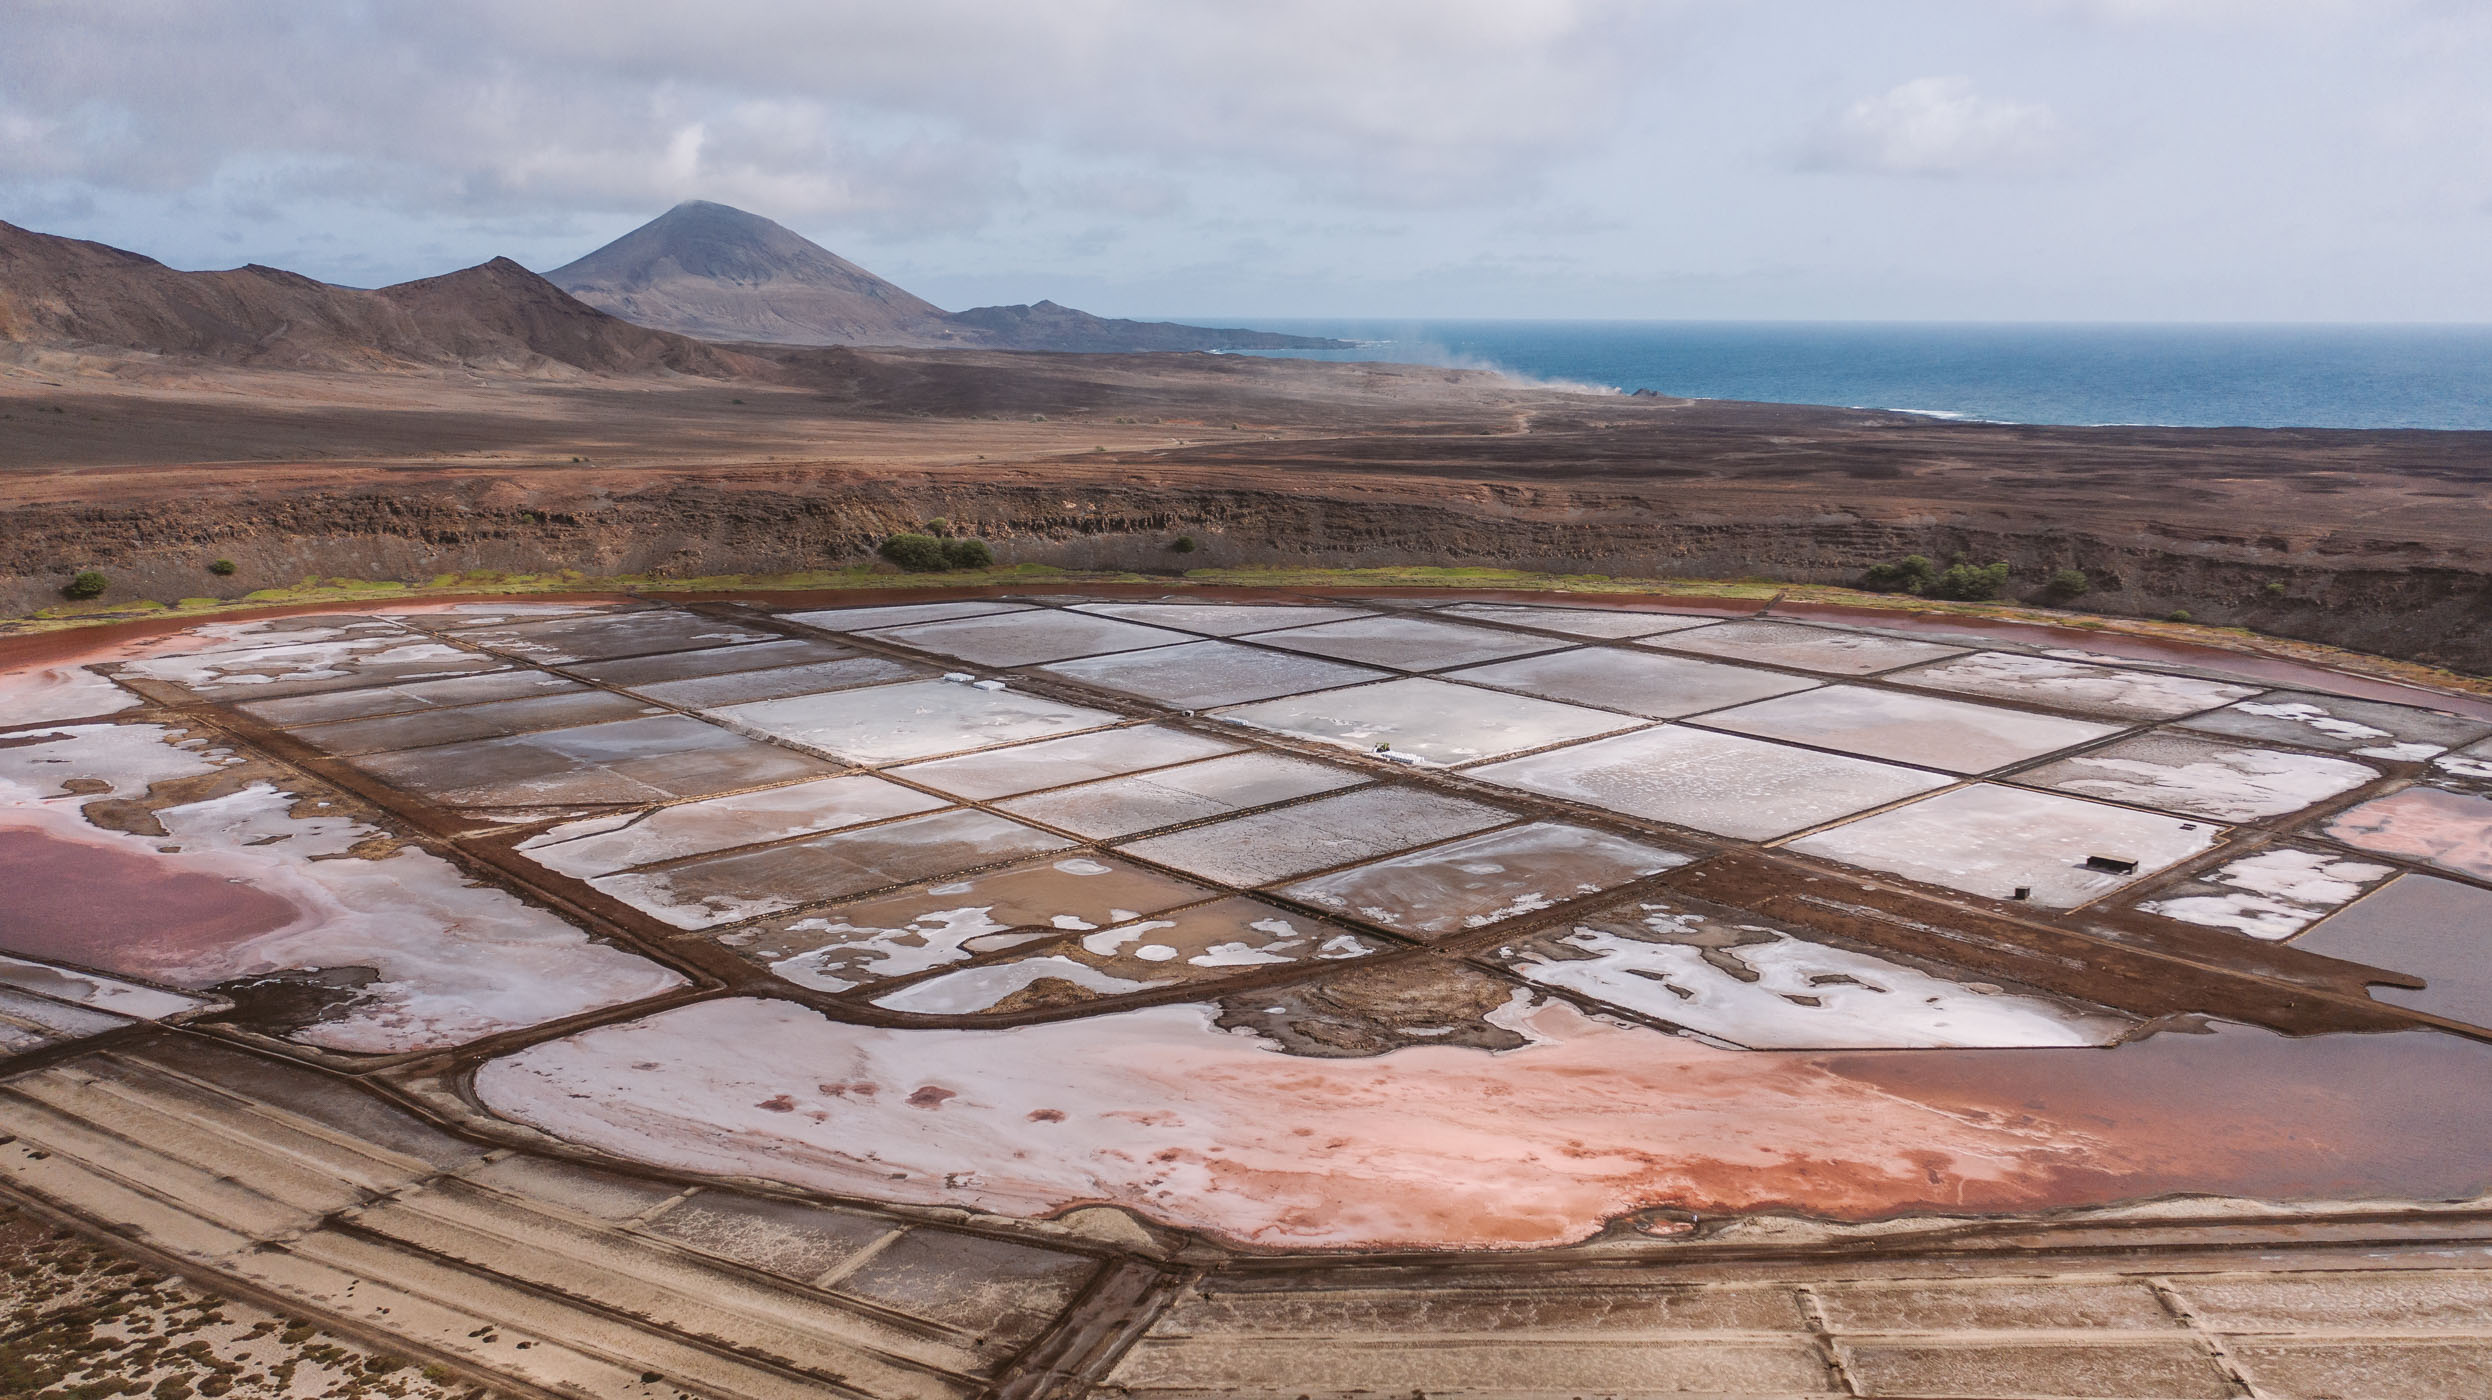 Salinas de Pedra de Lume on Sal Cape Verde